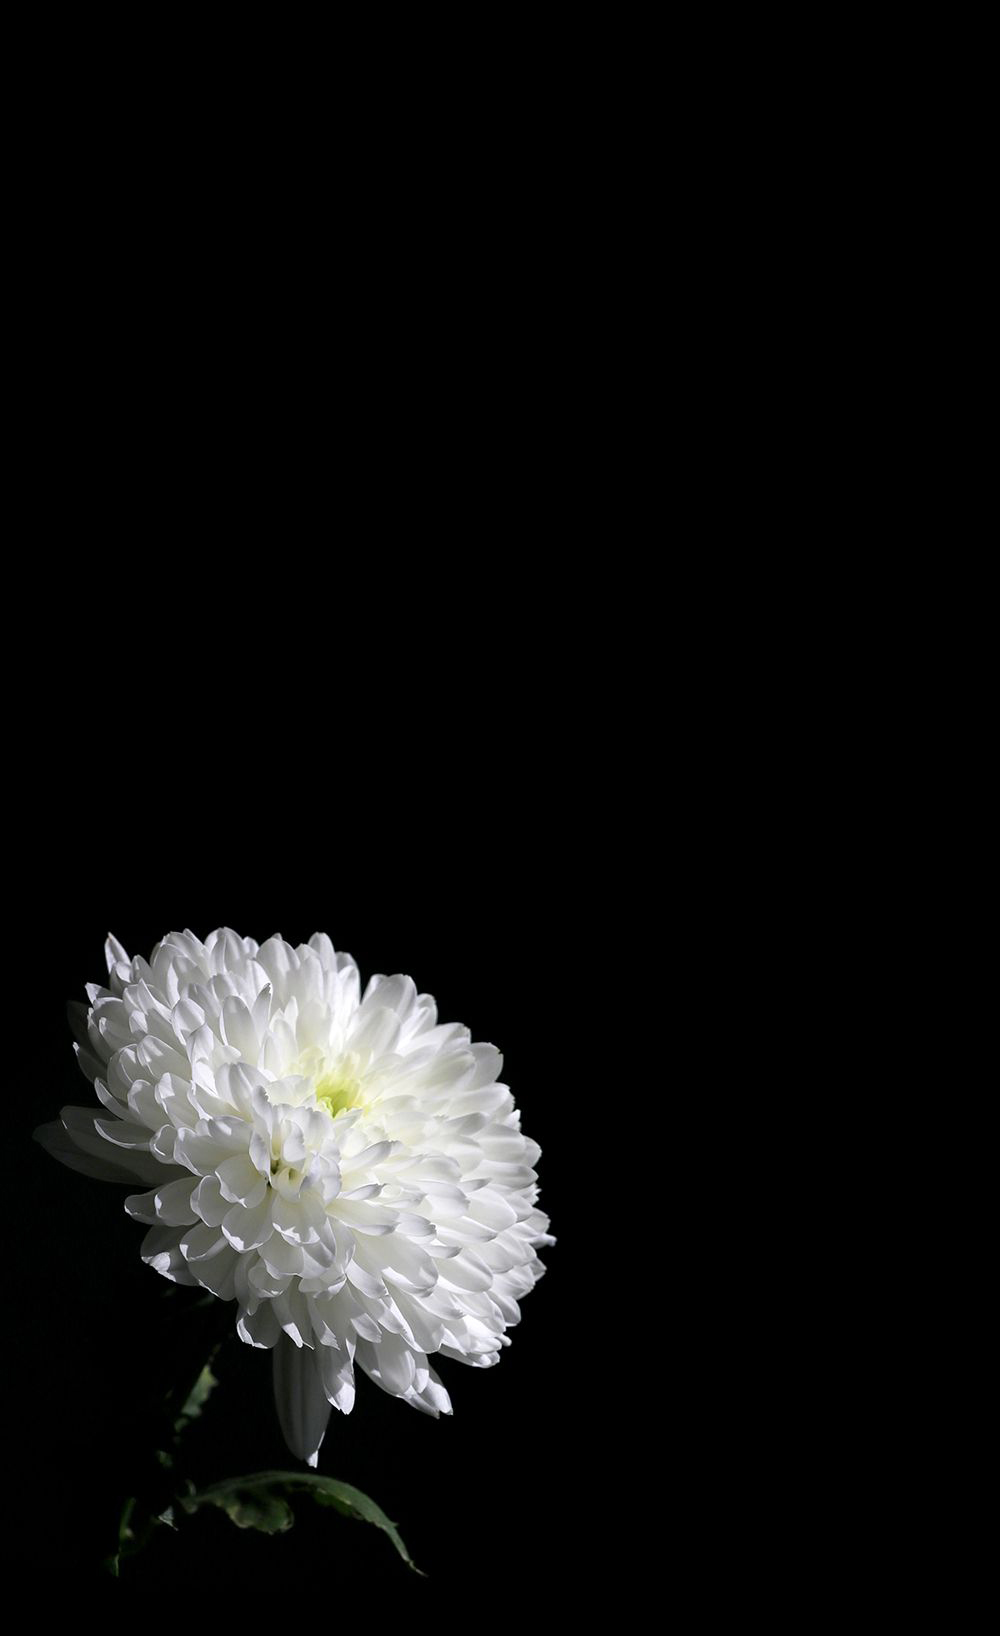 Hình ảnh hoa cúc trắng nền đen tuyệt đẹp - Văn Hóa Học